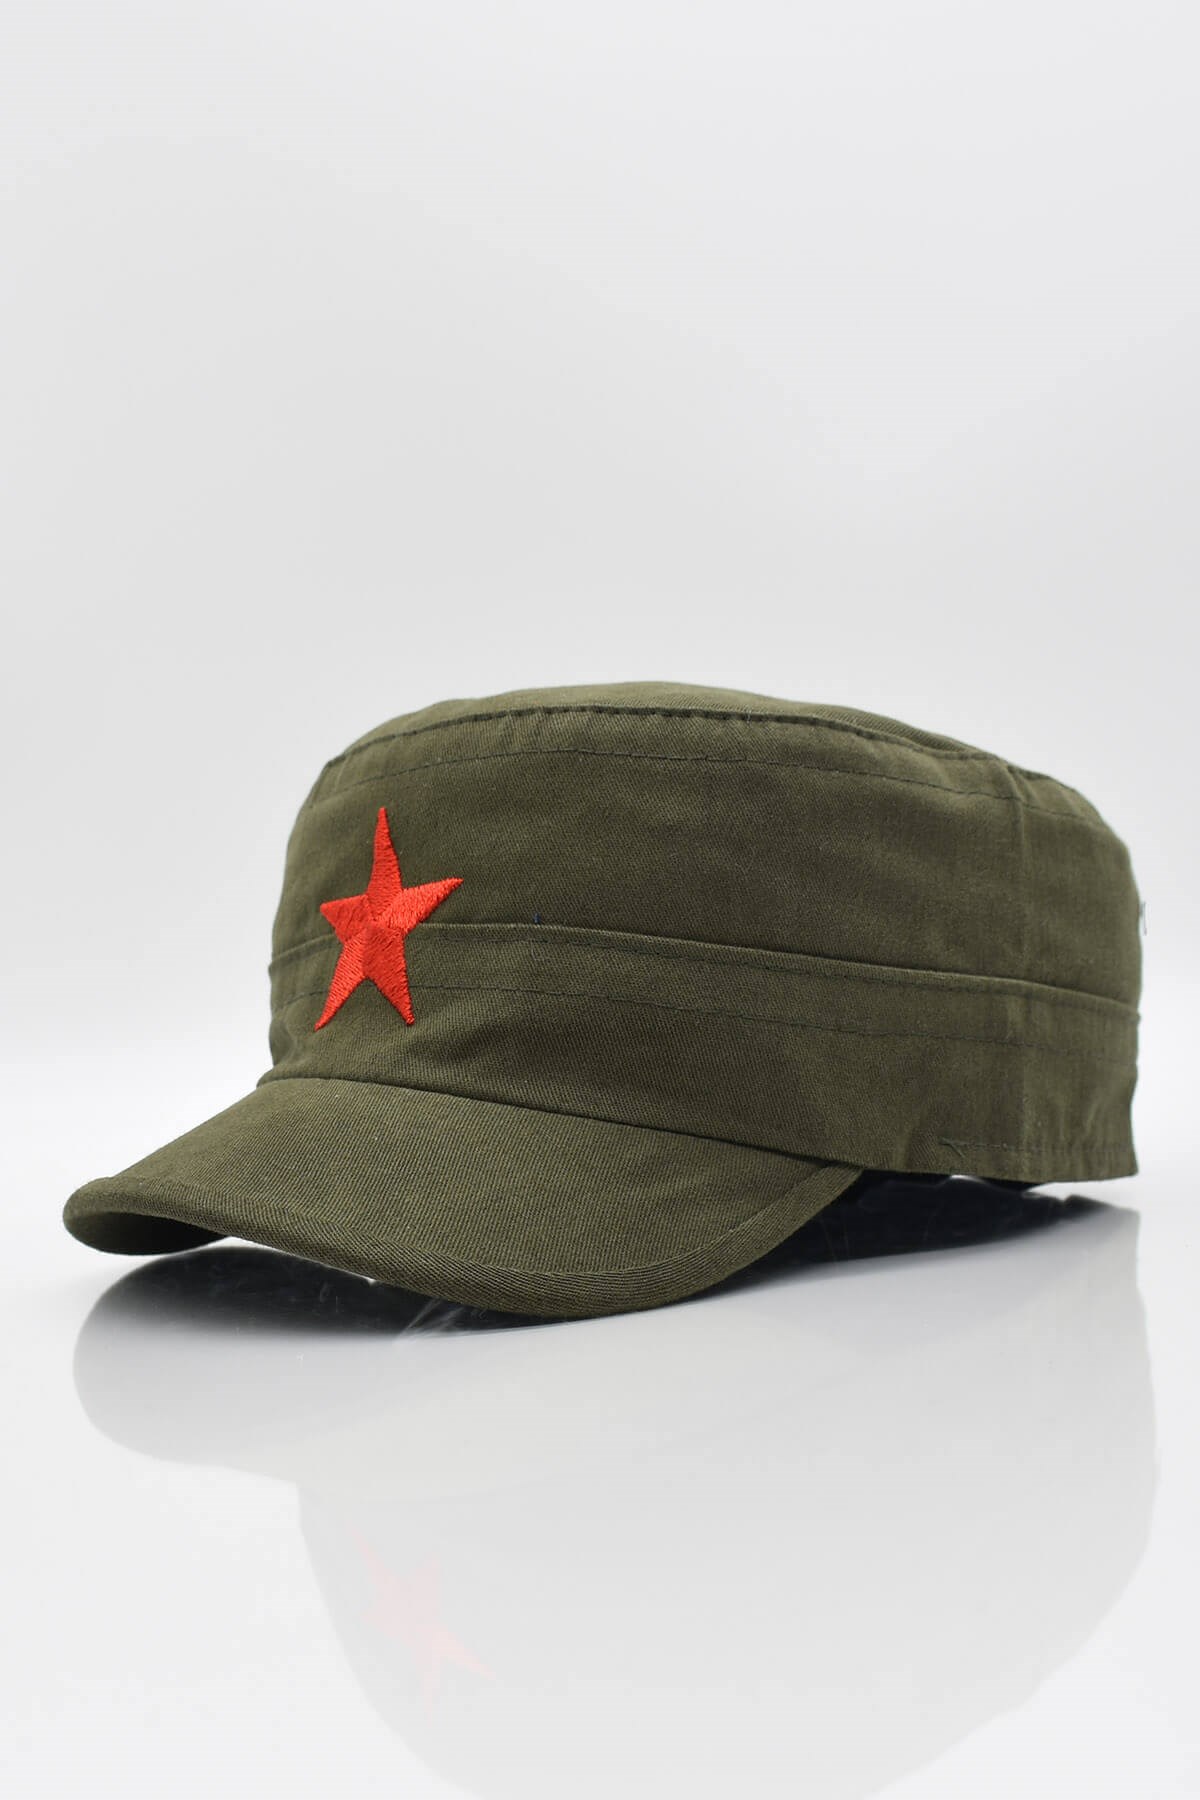 Külah Erkek Castro Şapka Yıldızlı Fidel Castro Kep-Haki KLH6874